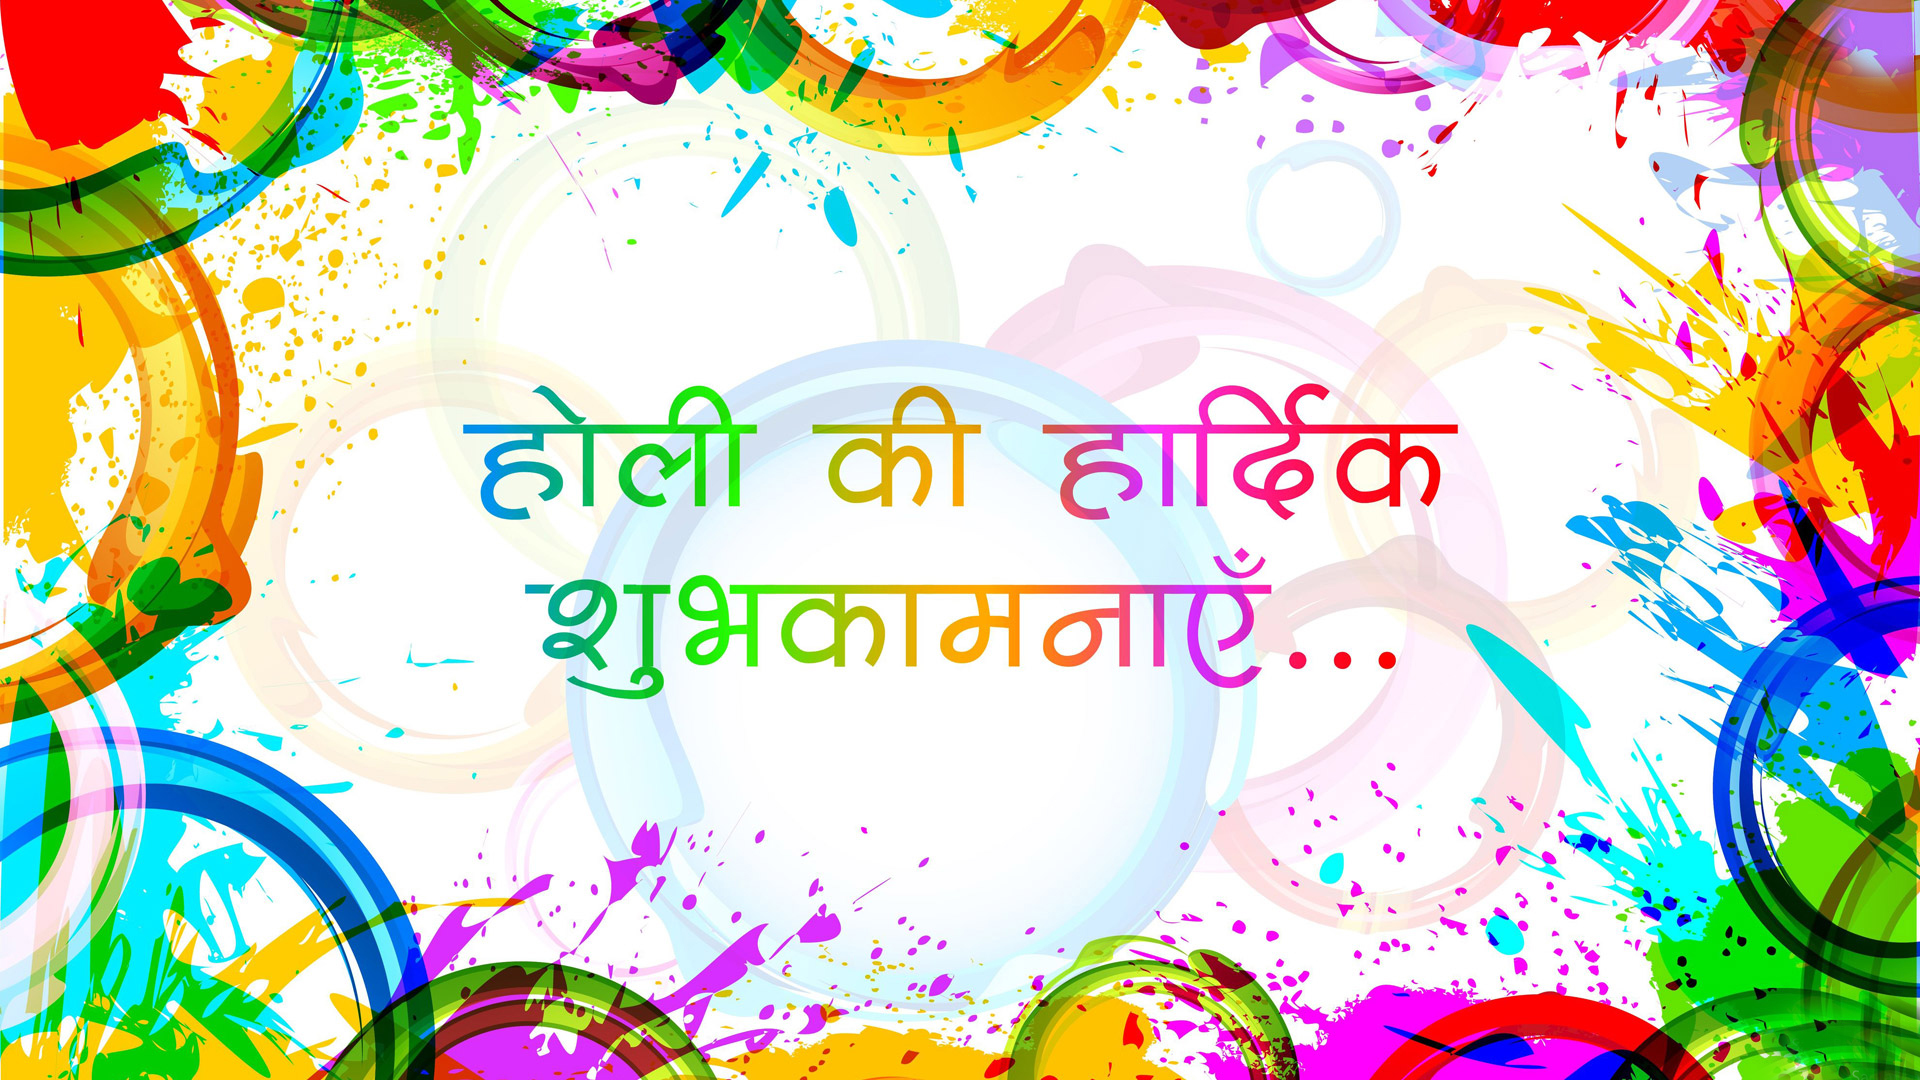 Holi Ki Shubhkamnaye Holi Wishes In Hindi Hd Wallpapers - Happy Holi Wishes In Hindi , HD Wallpaper & Backgrounds